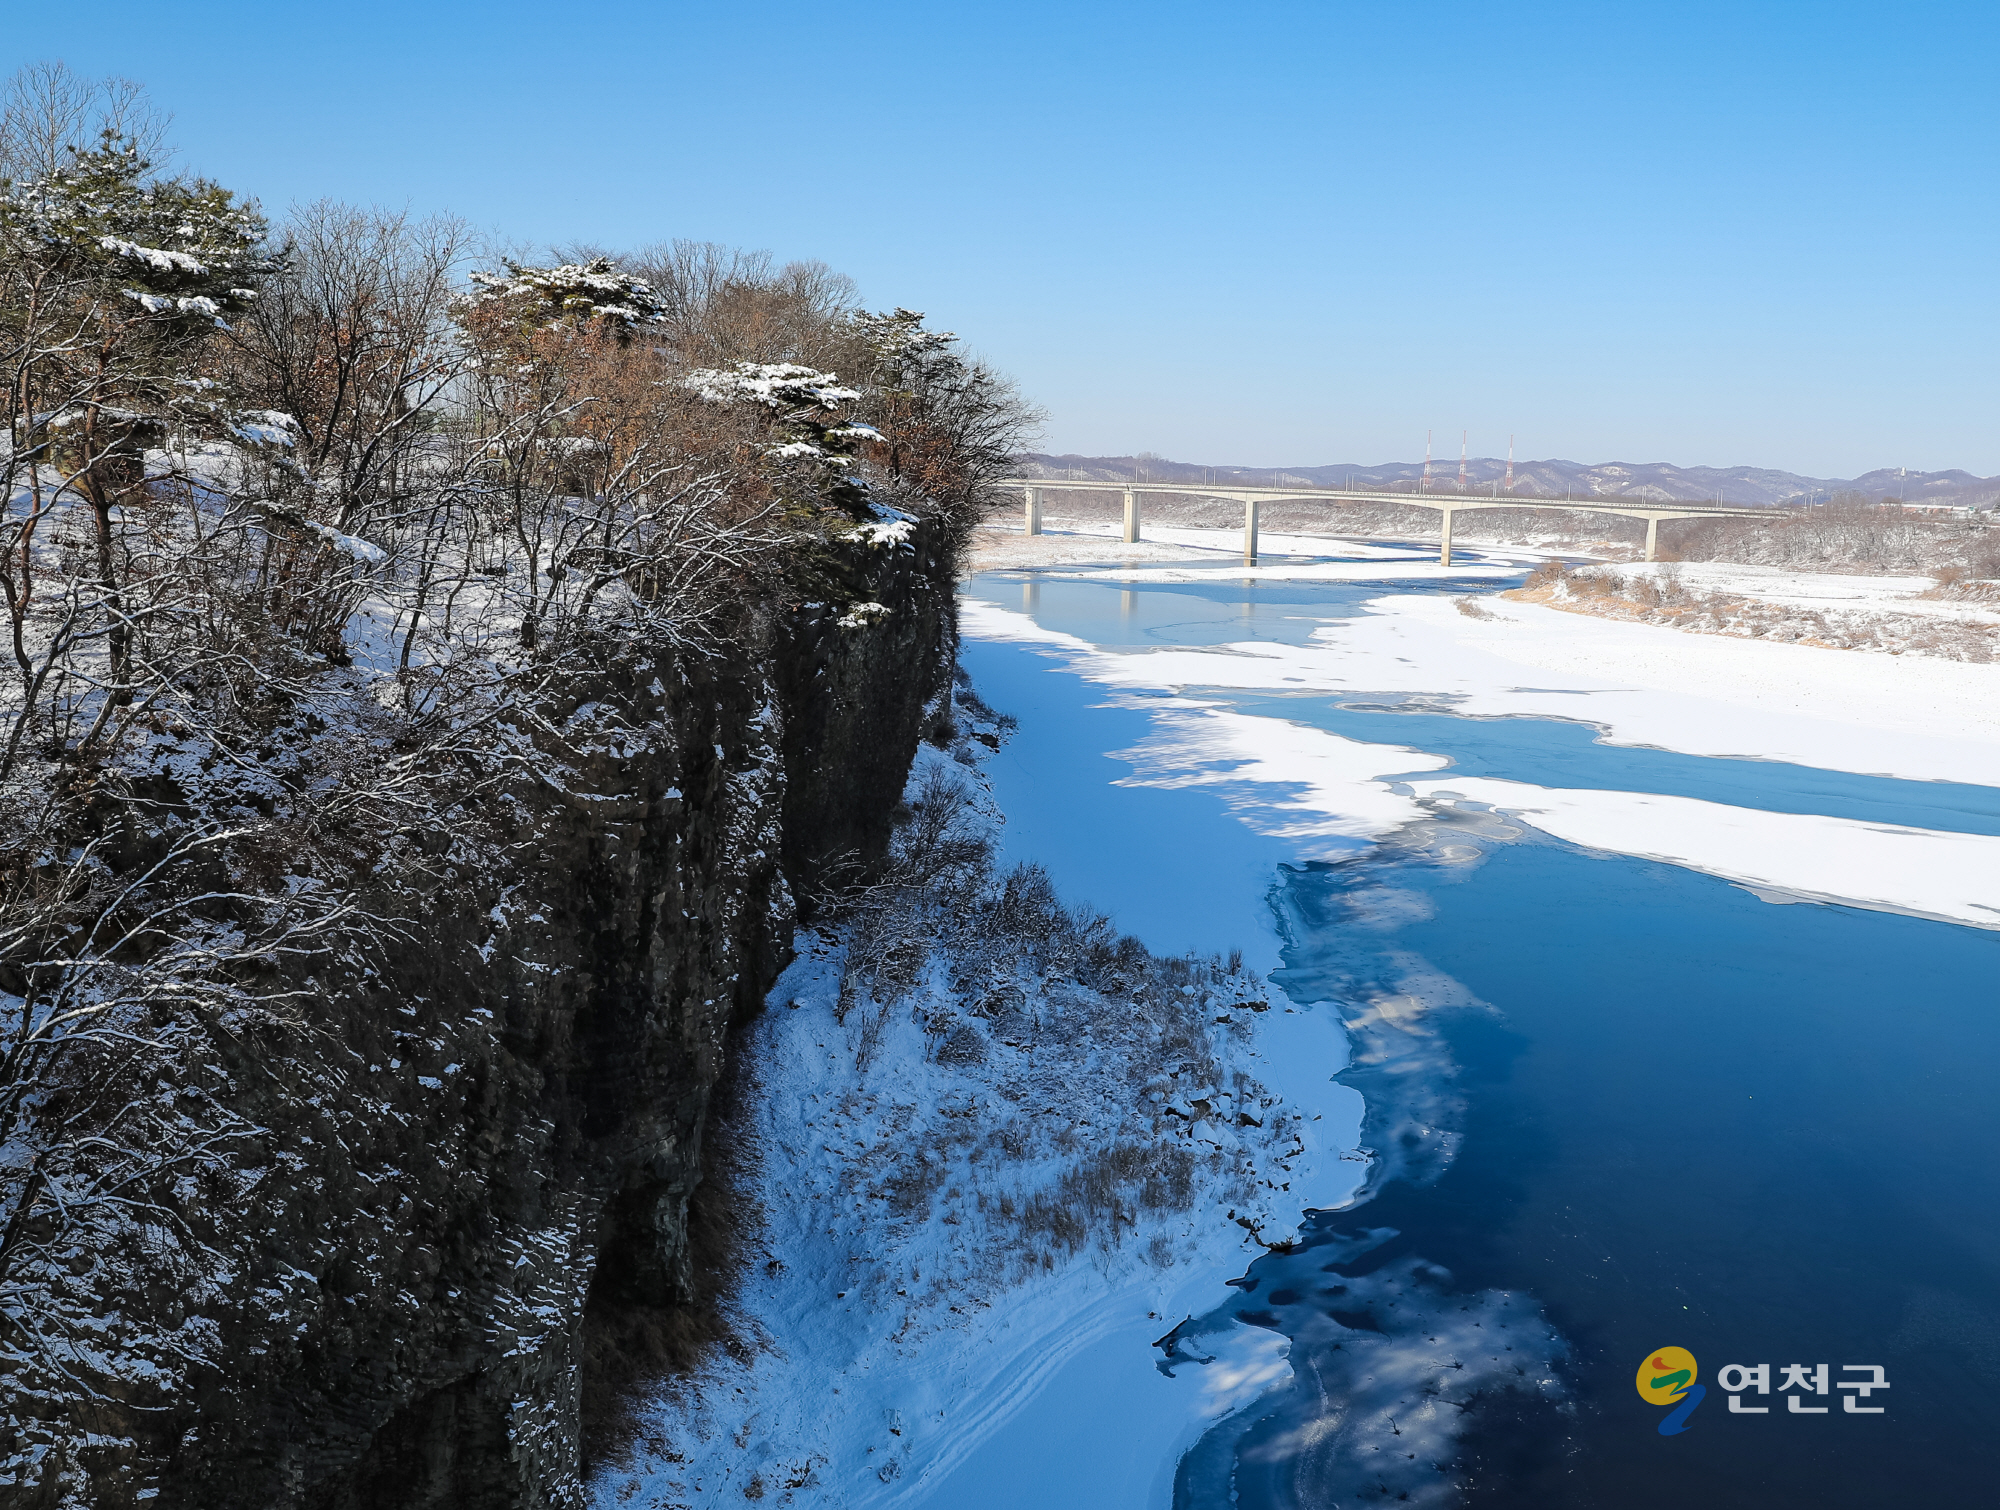 연천 임진강변의 겨울 이미지 1 - 본문에 자세한설명을 제공합니다.